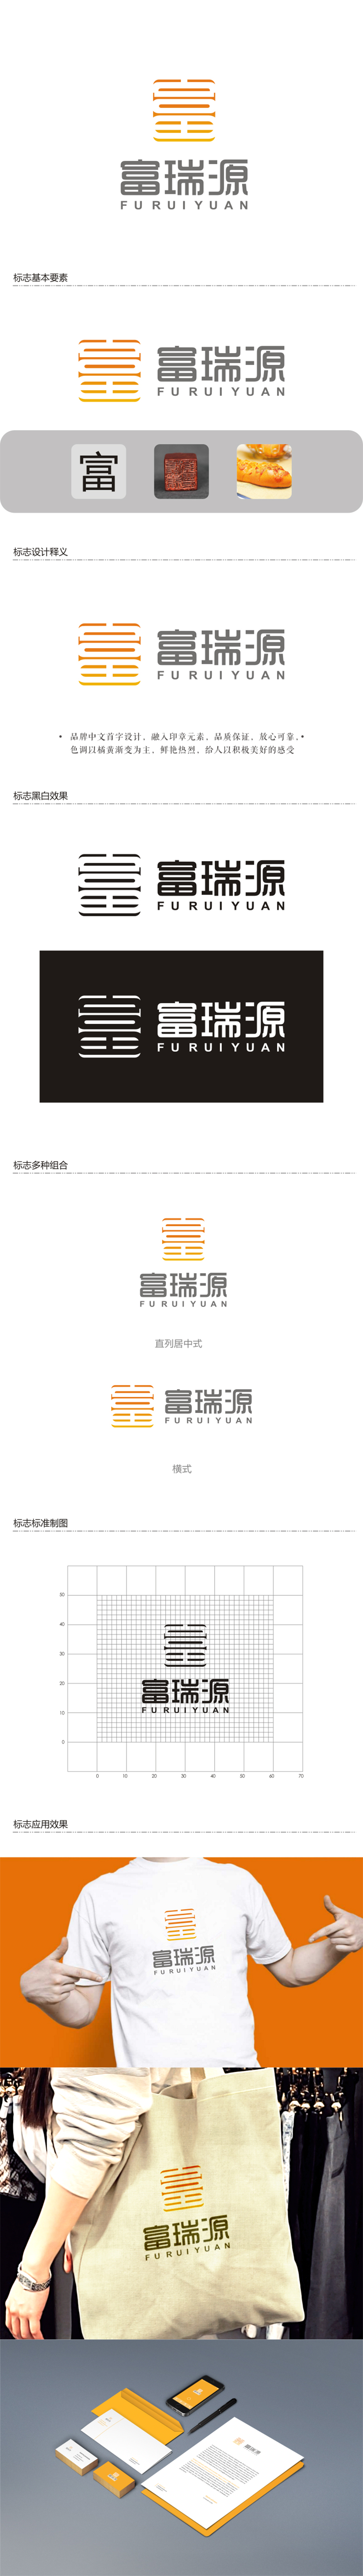 赵锡涛的富瑞源logo设计